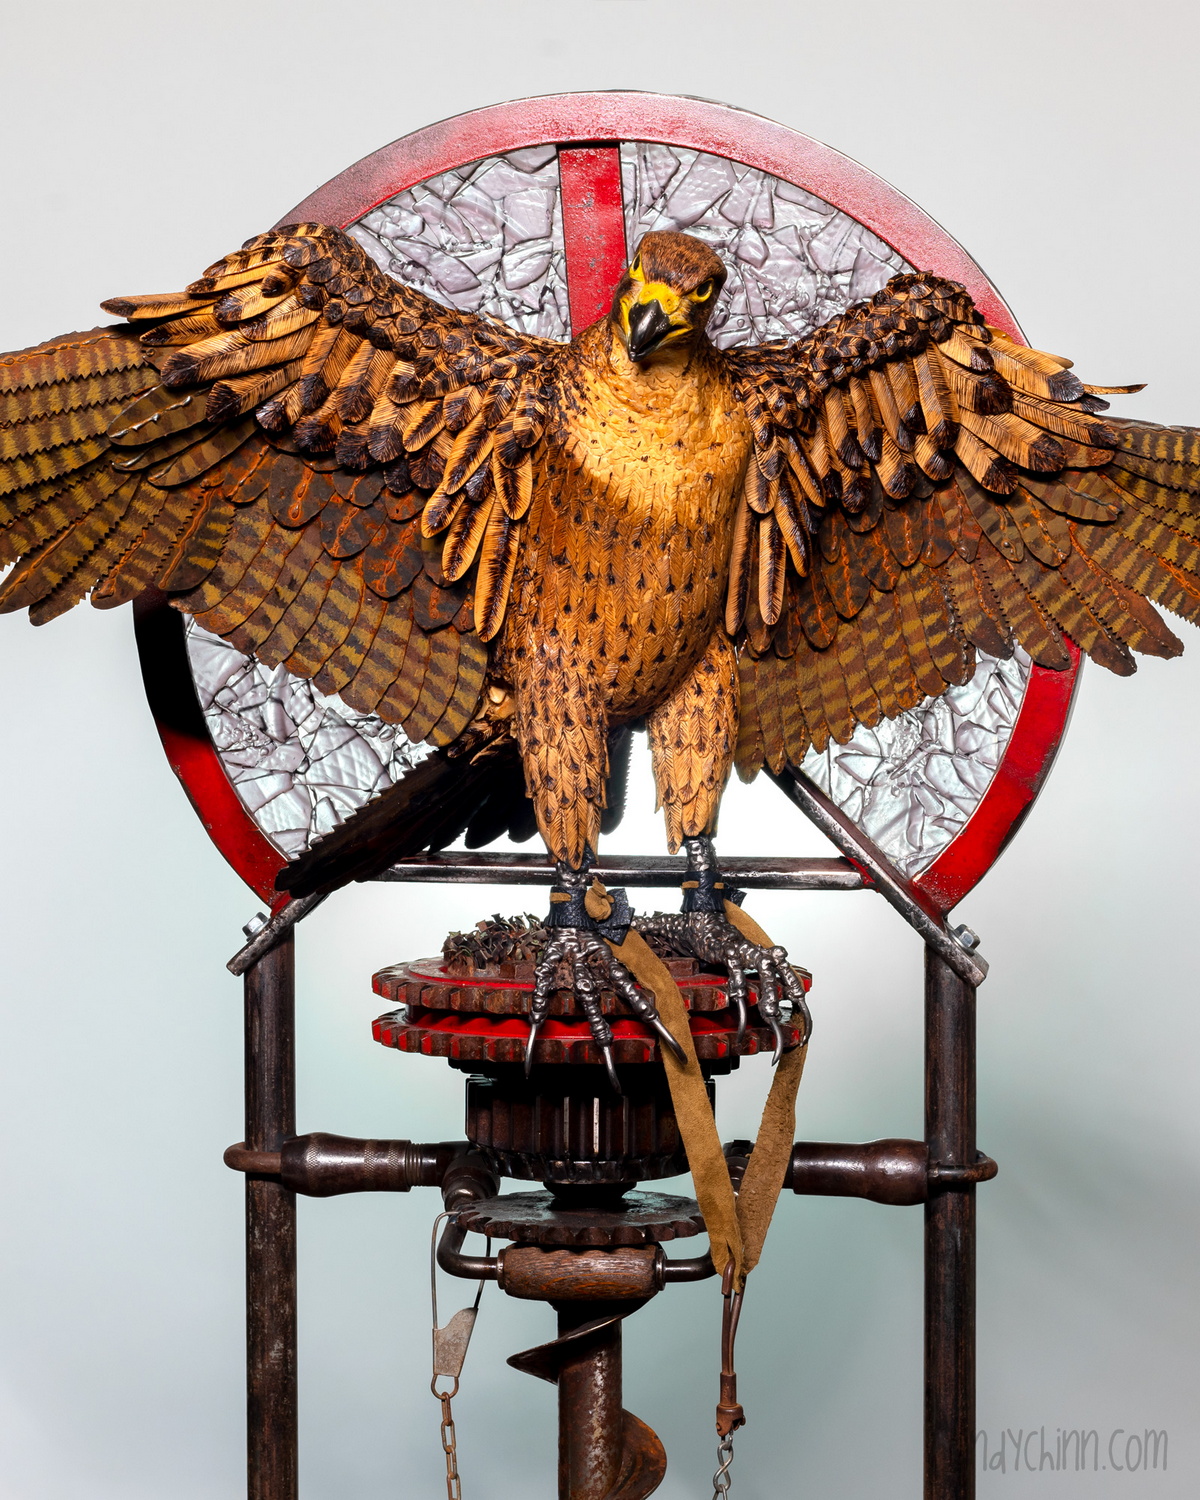 Художница Синди Чинн создаёт потрясающие скульптуры из металлолома